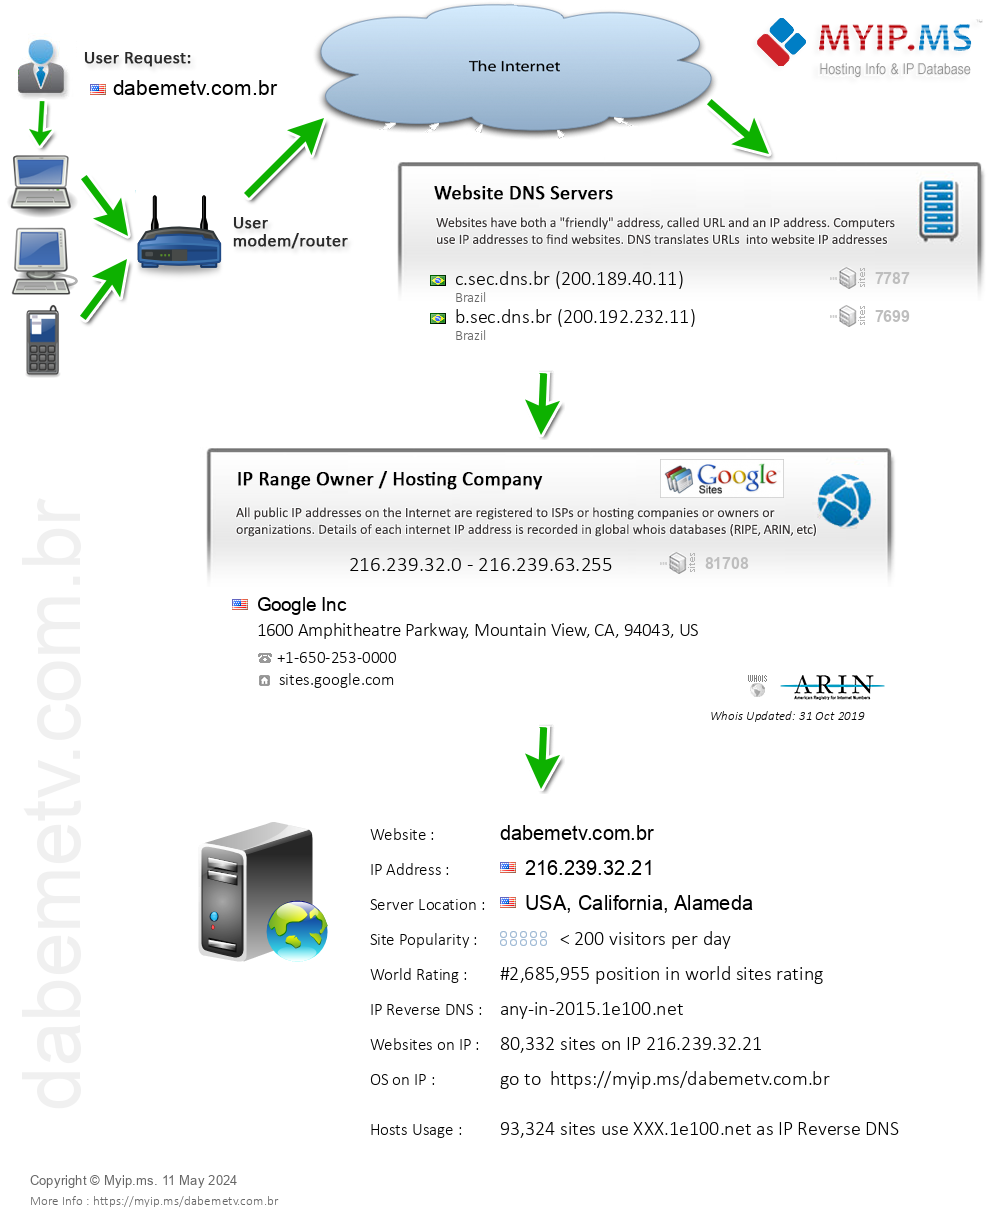 Dabemetv.com.br - Website Hosting Visual IP Diagram